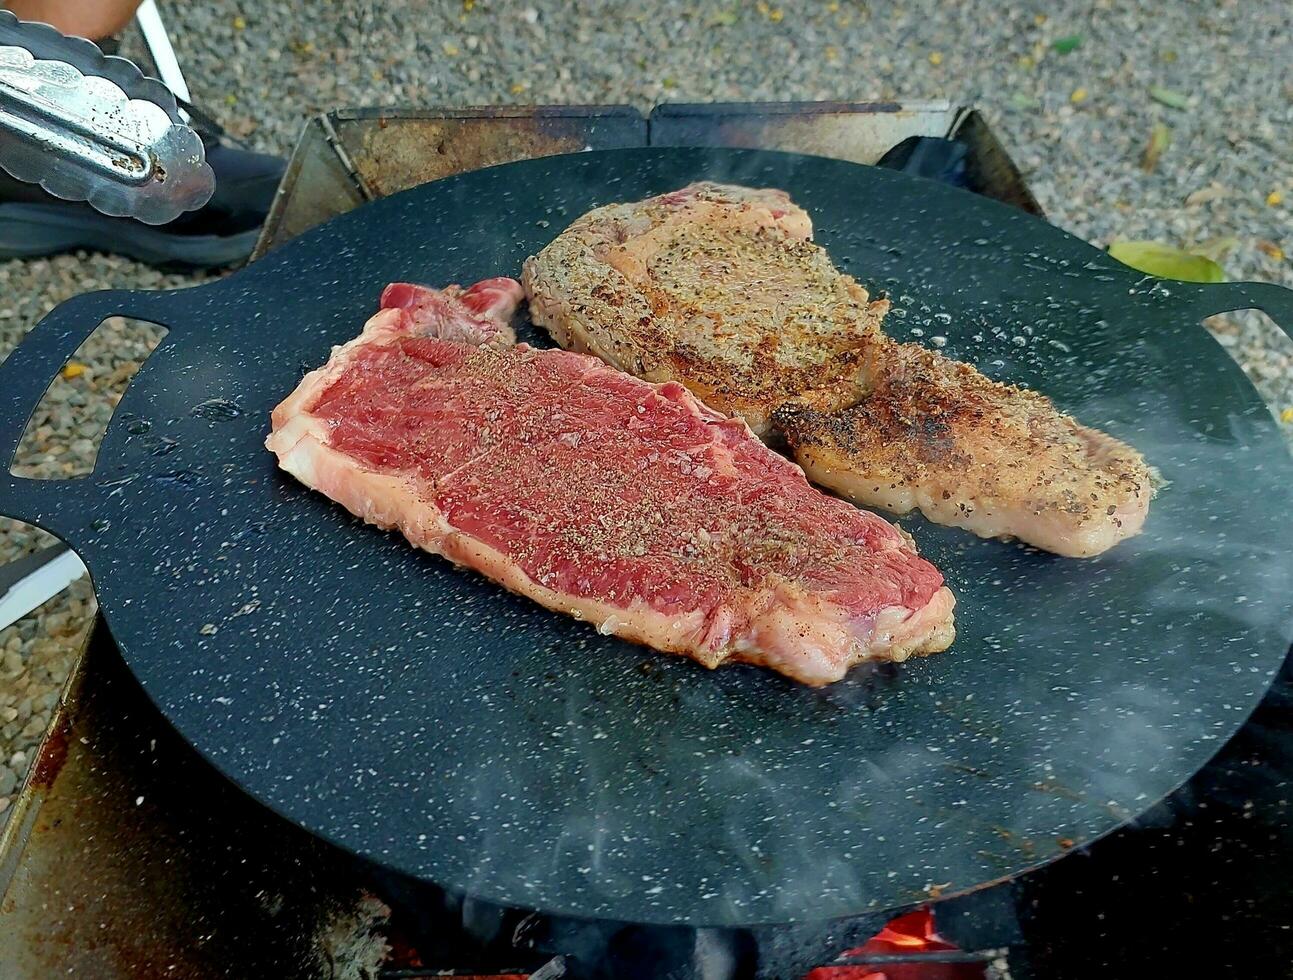 cuisine steaks à camping. frire steaks dans une friture la poêle à camping. steaks dans une poêle. deux graisse juteux steak frit dans le olive pétrole dans une friture poêle. photo